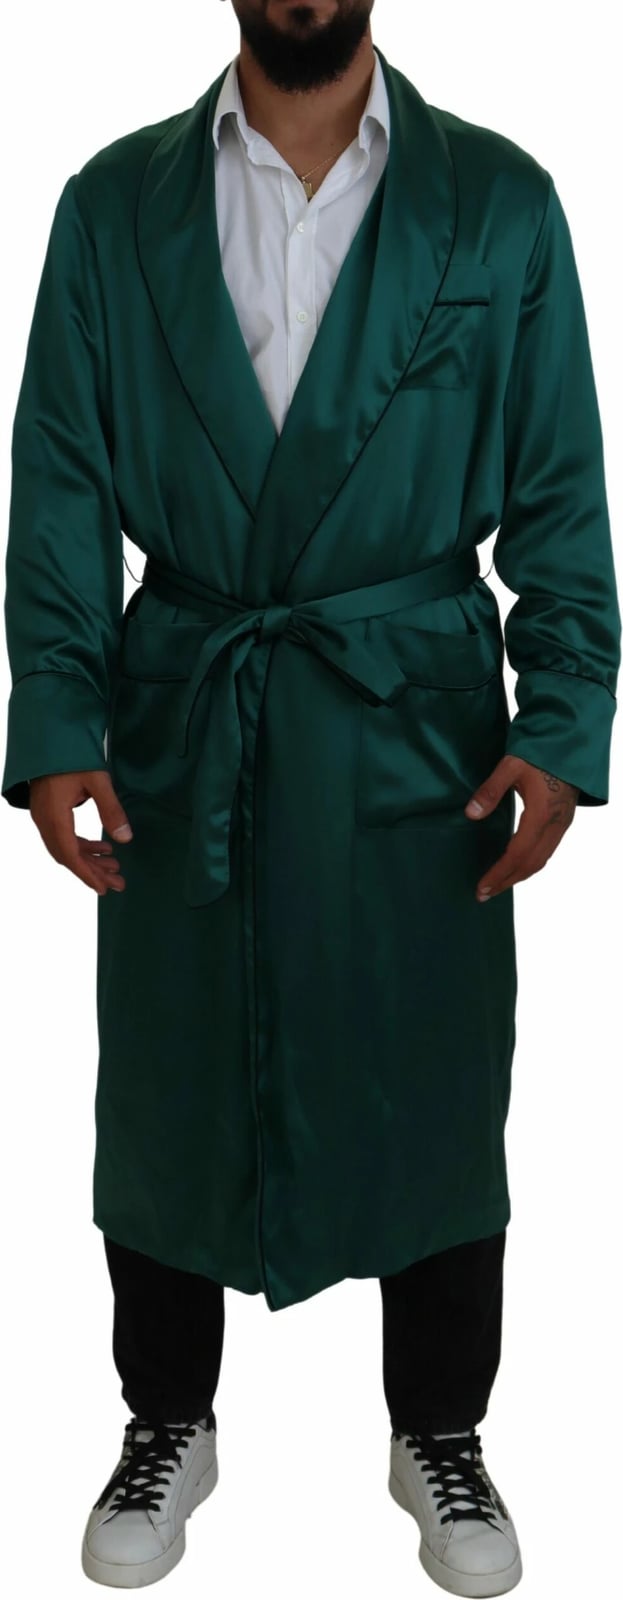 Mantel për meshkuj Dolce & Gabbana, e gjelbër